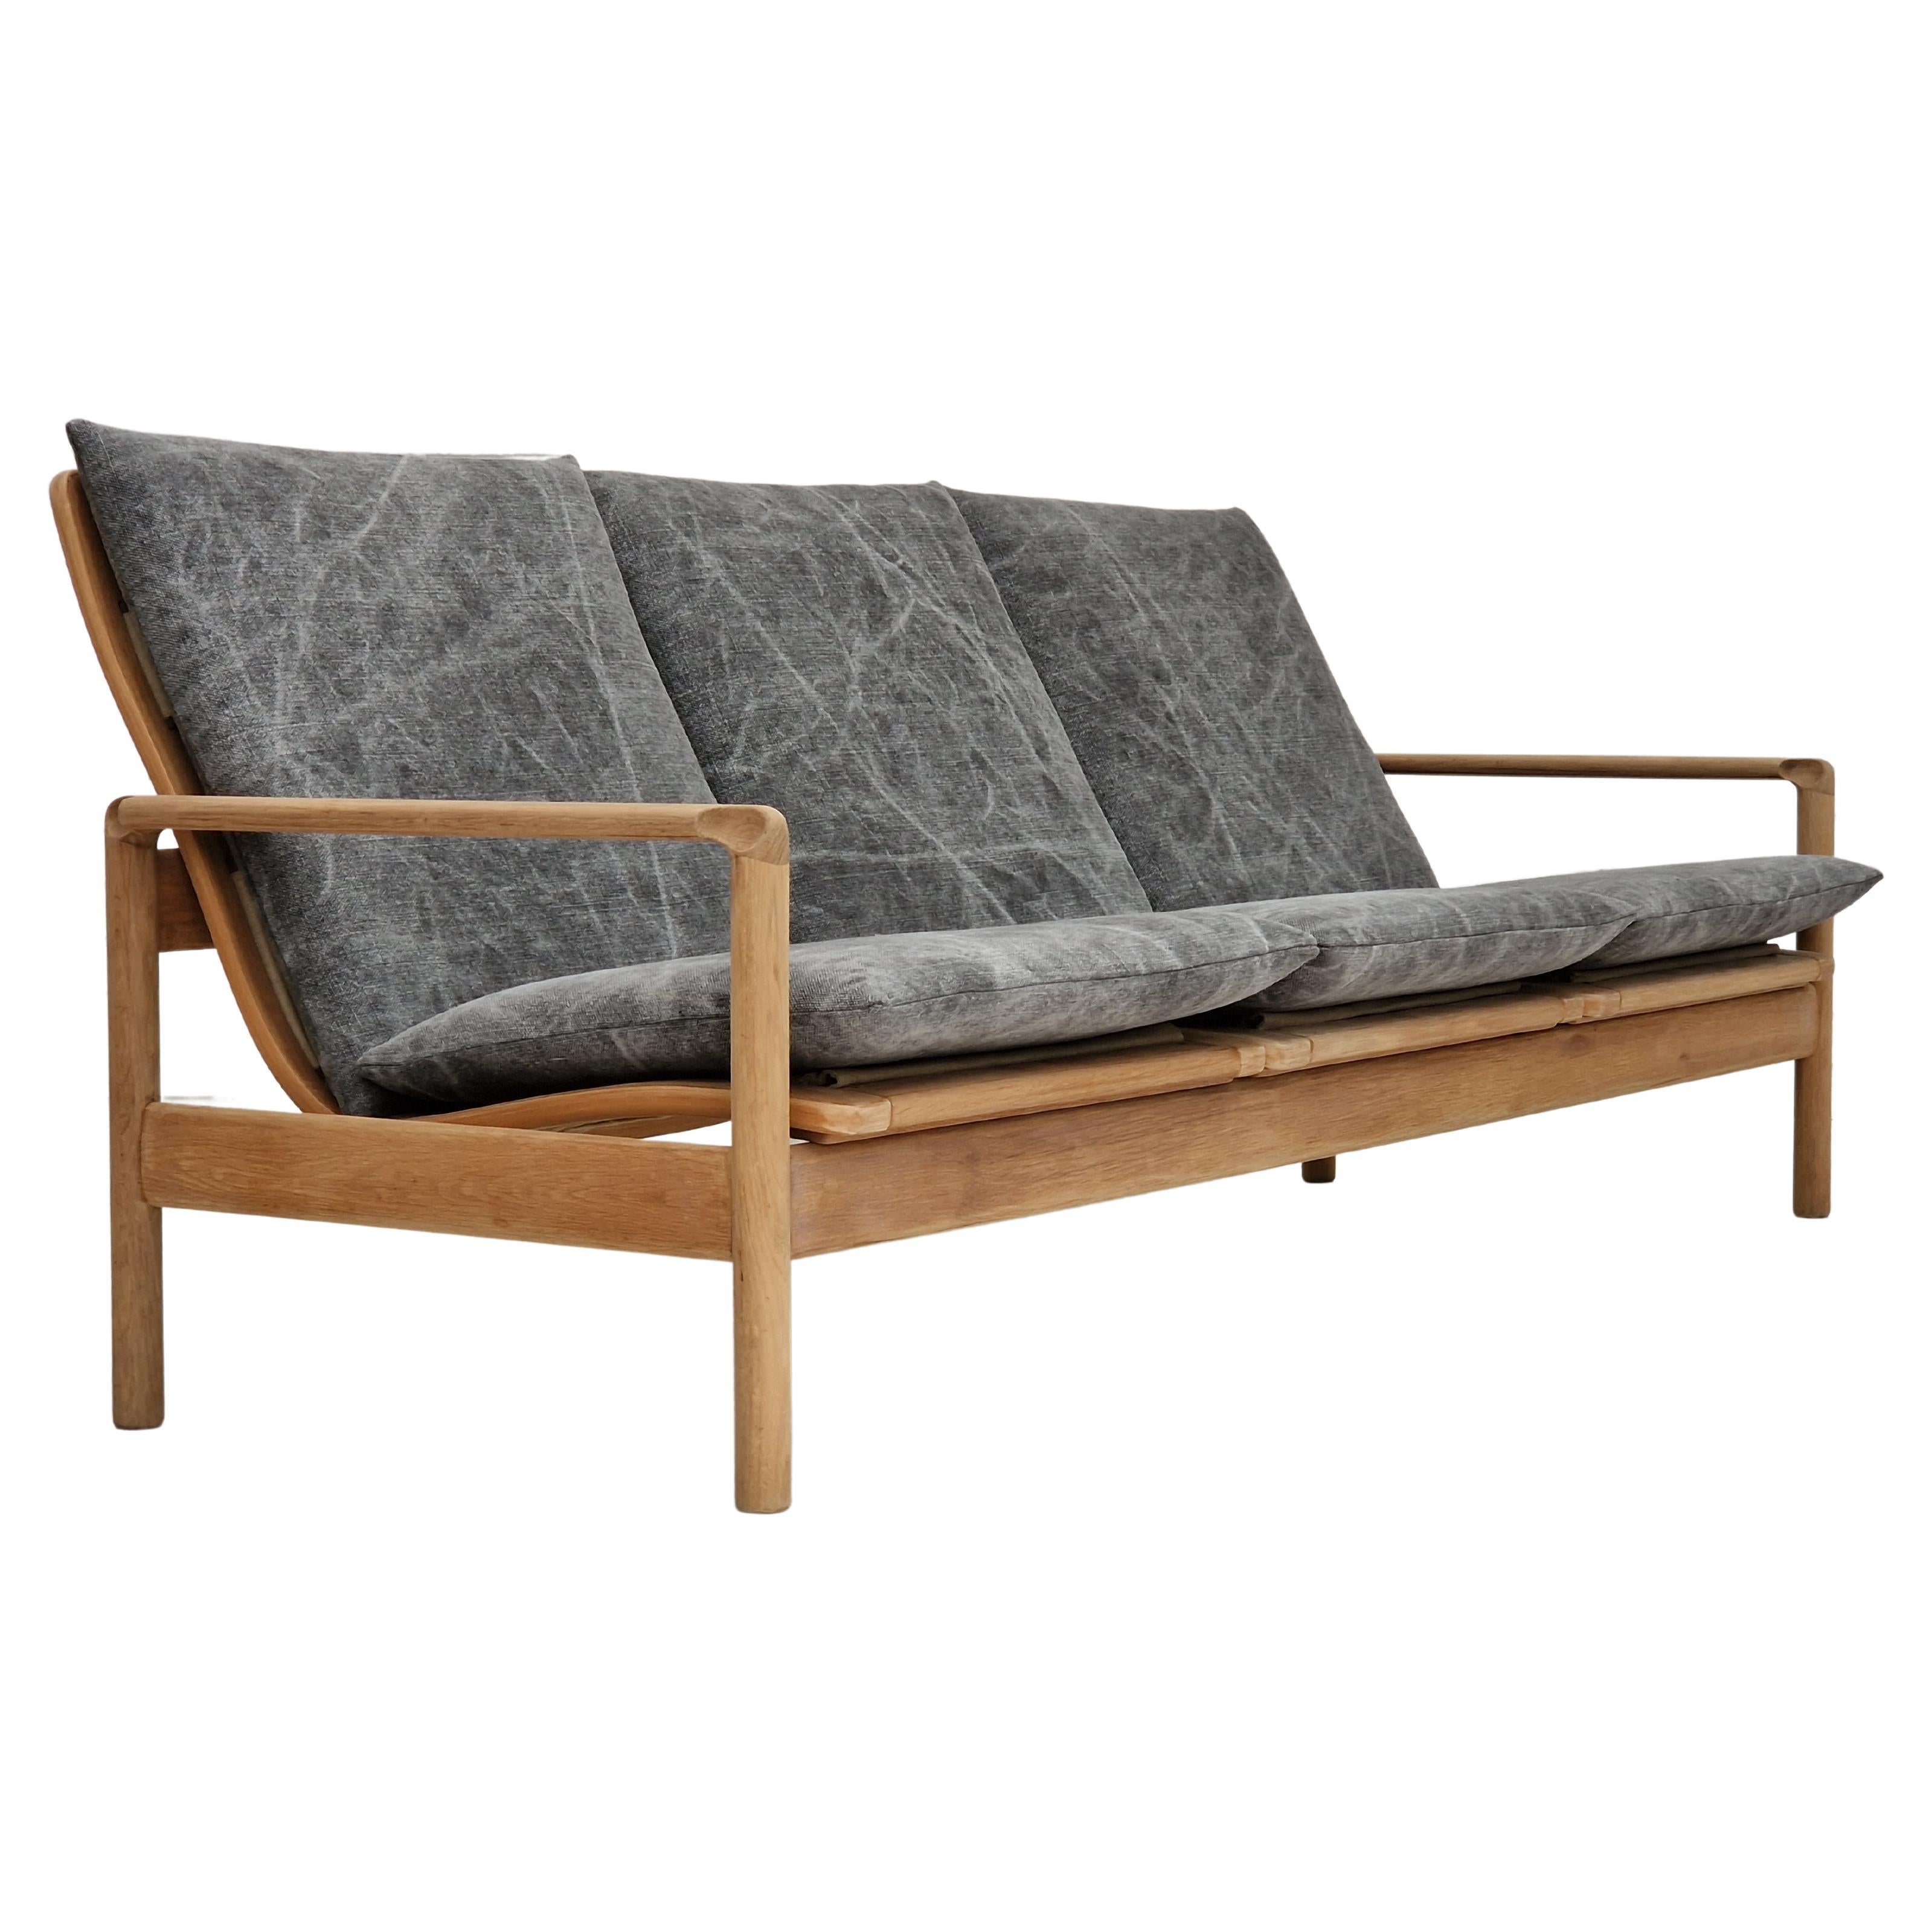 Des années 70, design danois, canapé à 3 places rénové, tissu de meubles en lin, bois de chêne